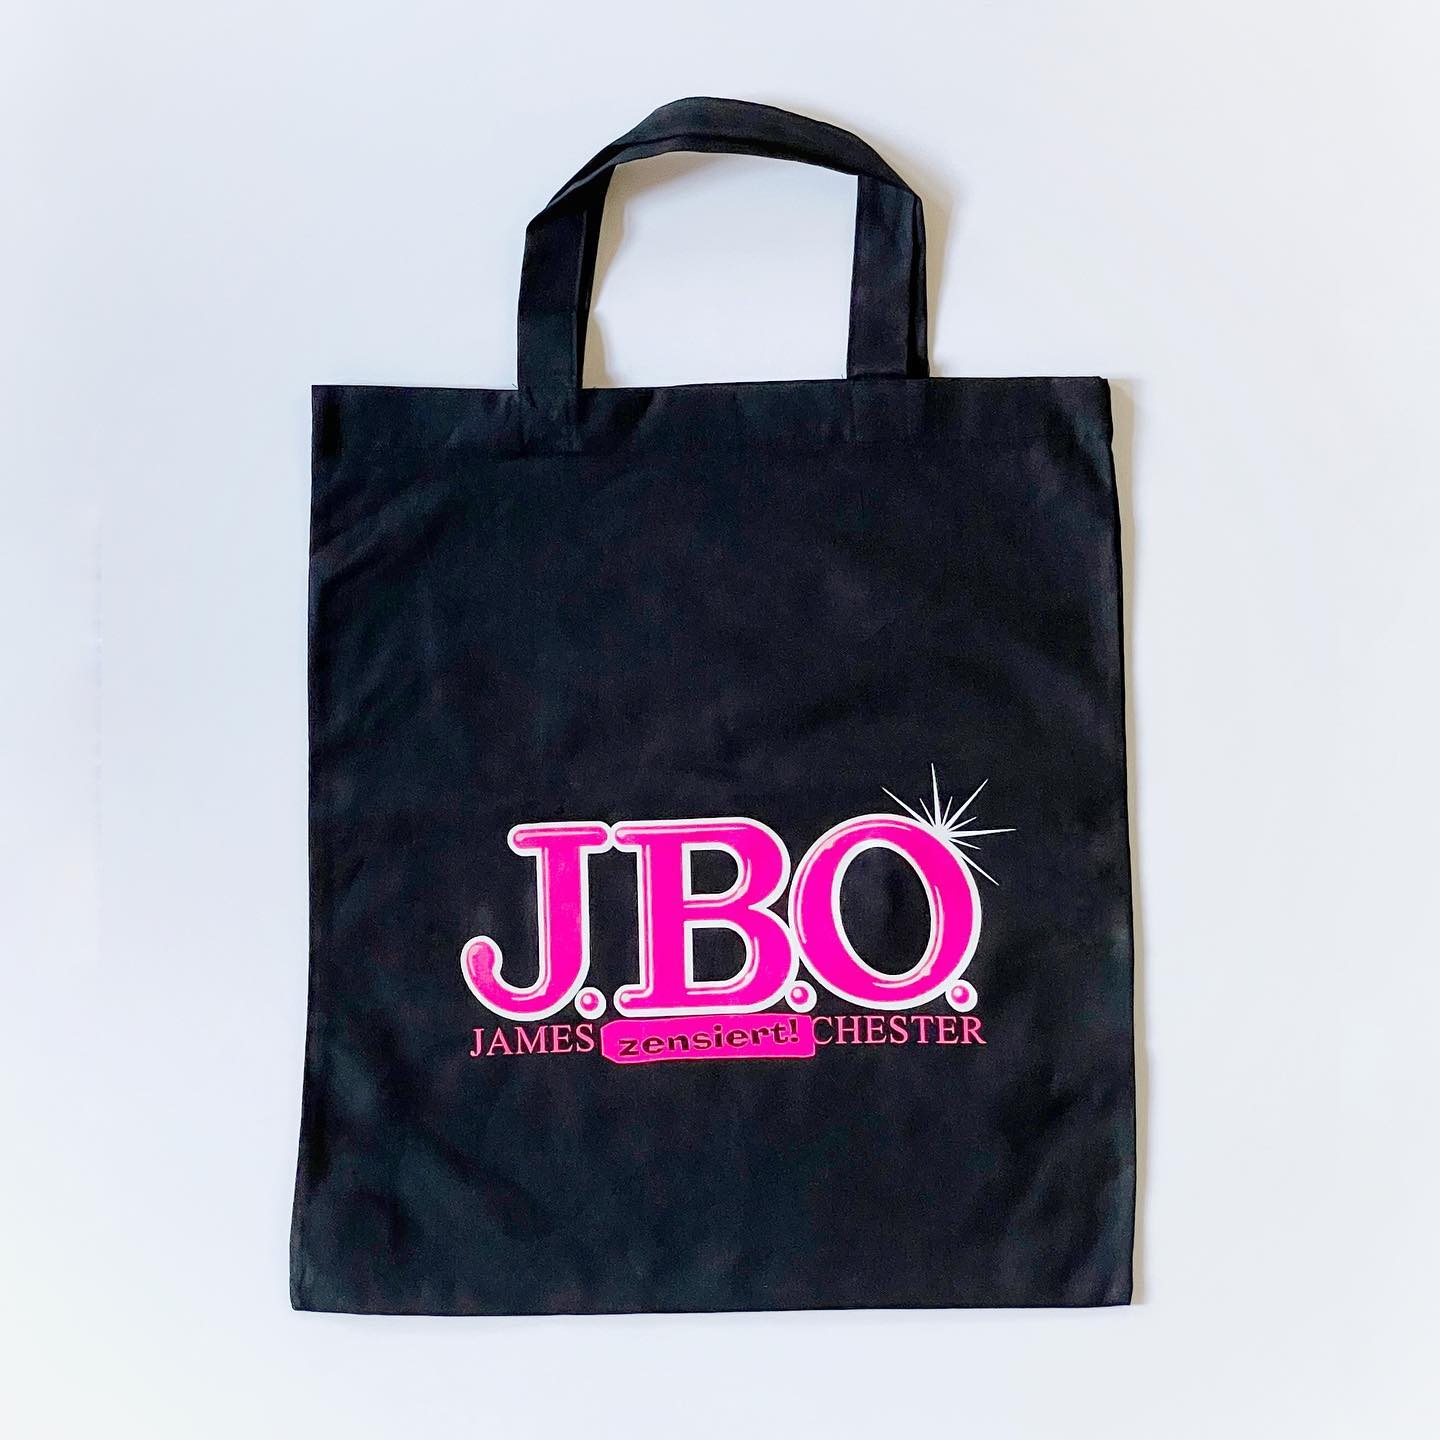 Instagram: Neu im jbo-shop.de: Die J.B.O.-Blackbag - Link in Bio, od...